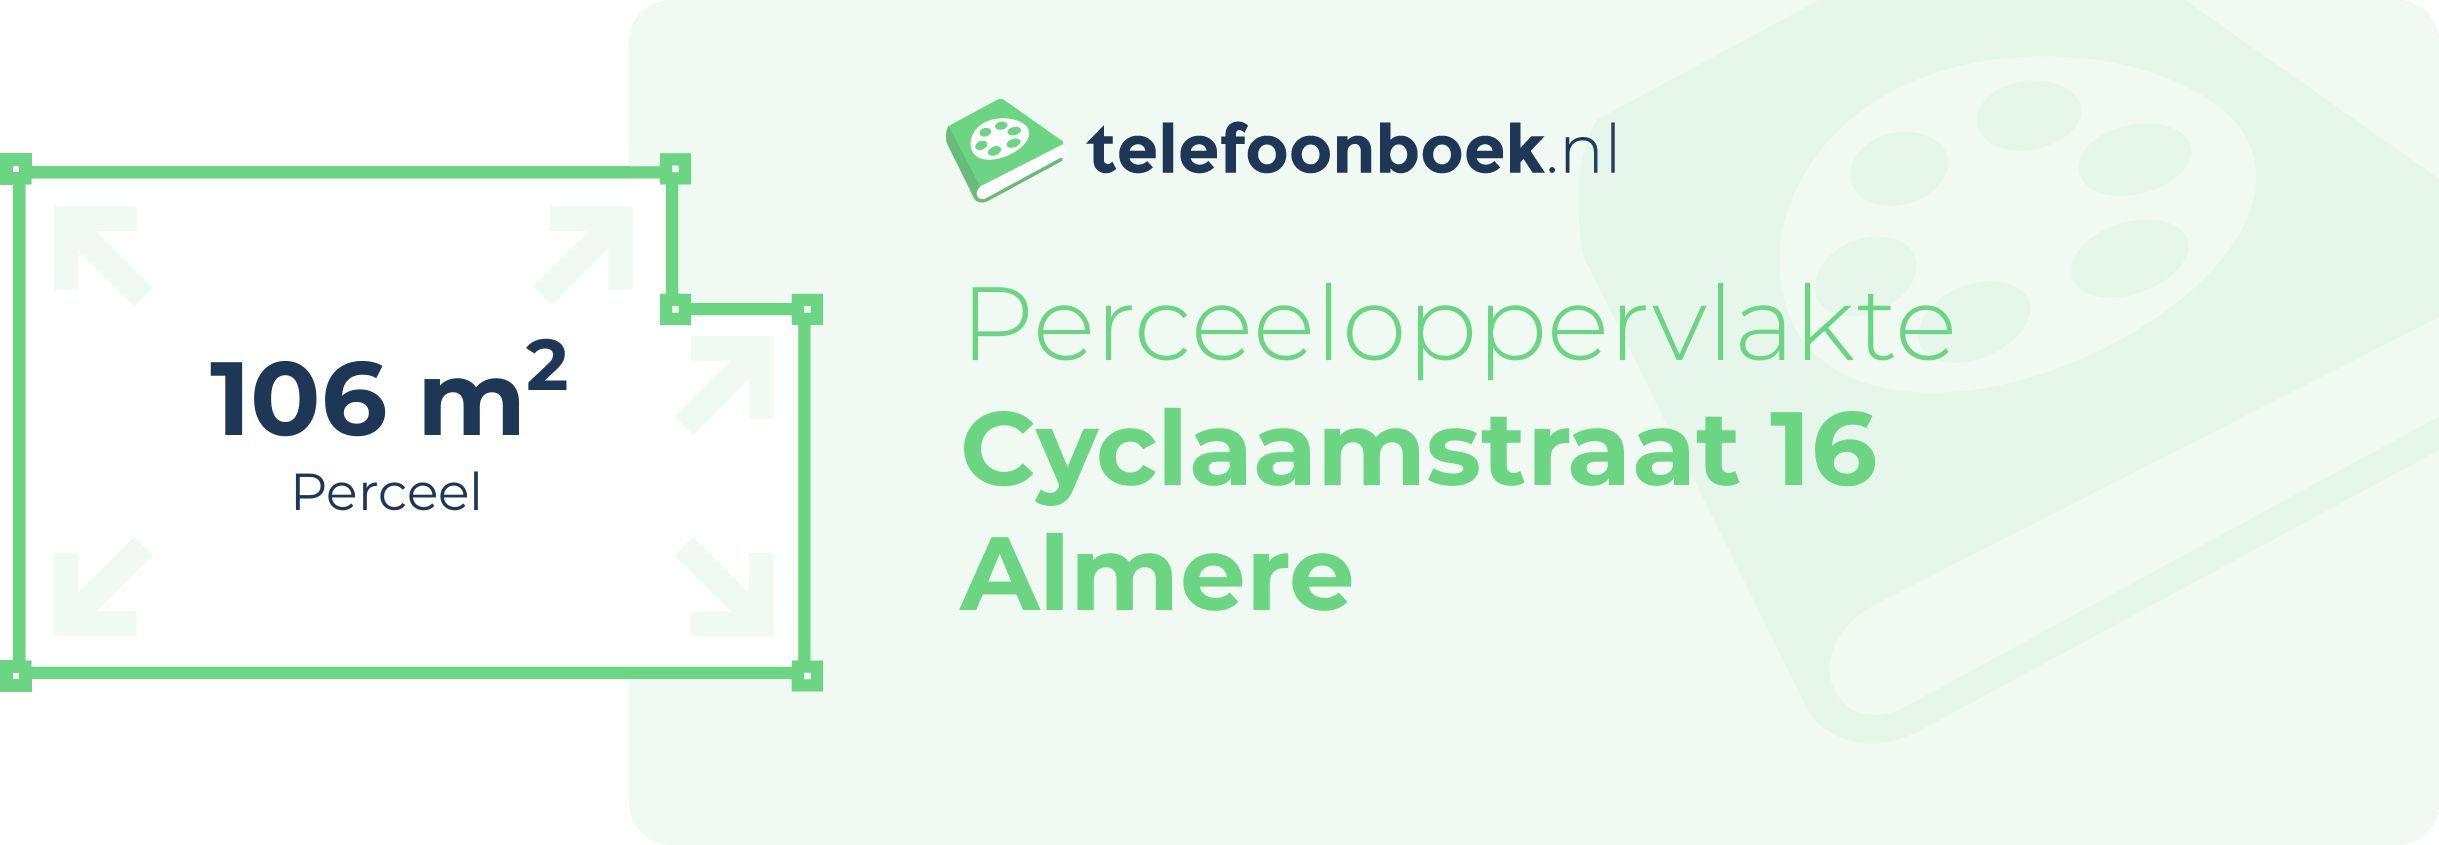 Perceeloppervlakte Cyclaamstraat 16 Almere